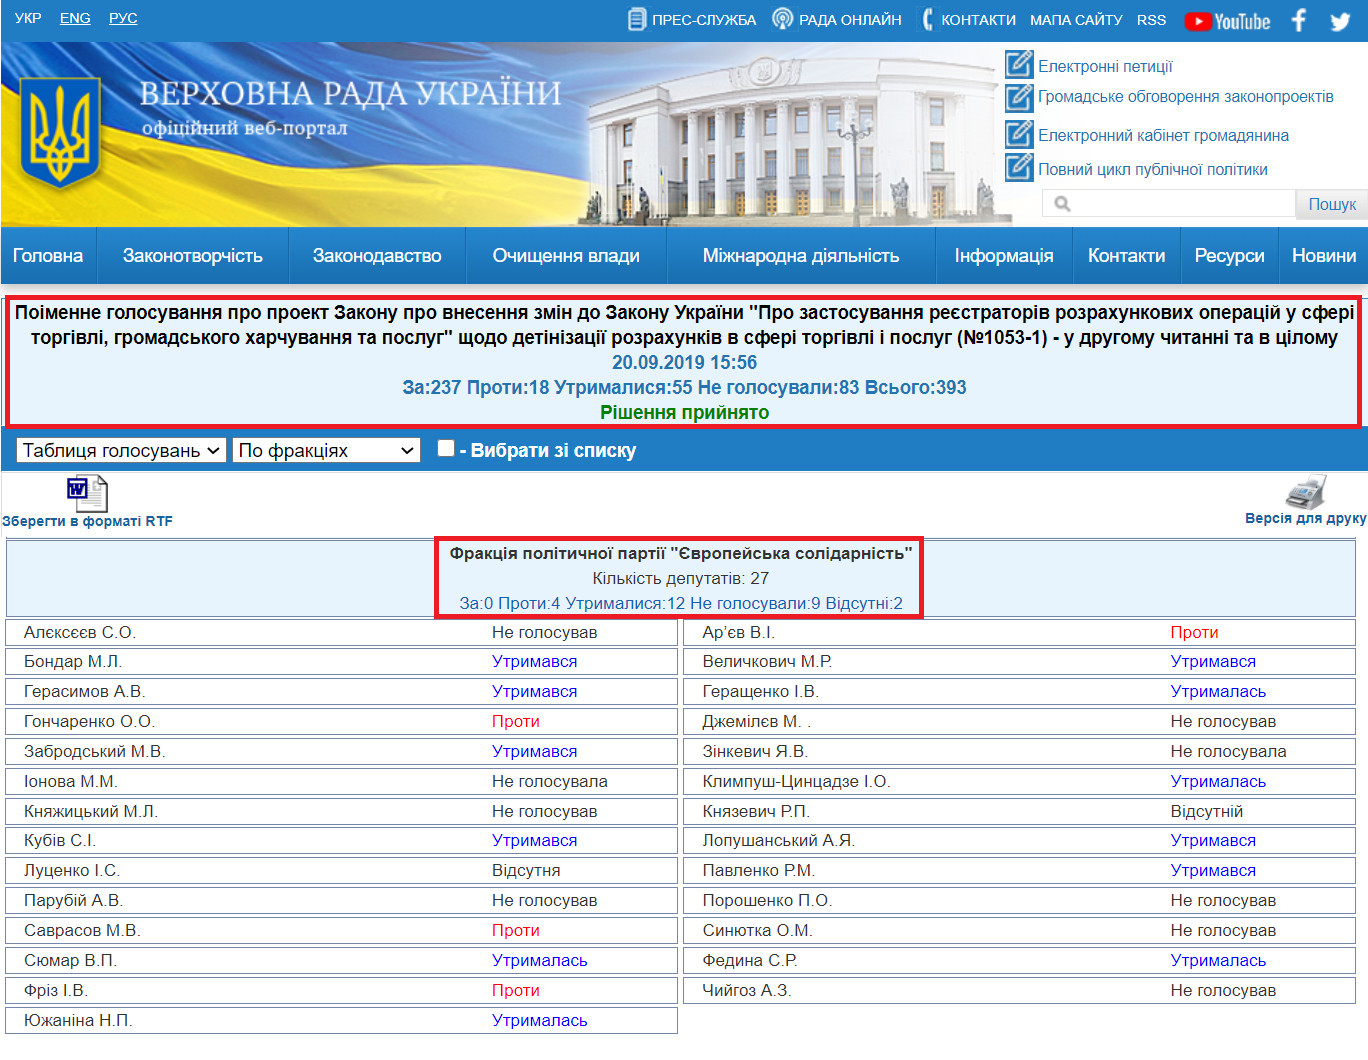 http://w1.c1.rada.gov.ua/pls/radan_gs09/ns_golos?g_id=724